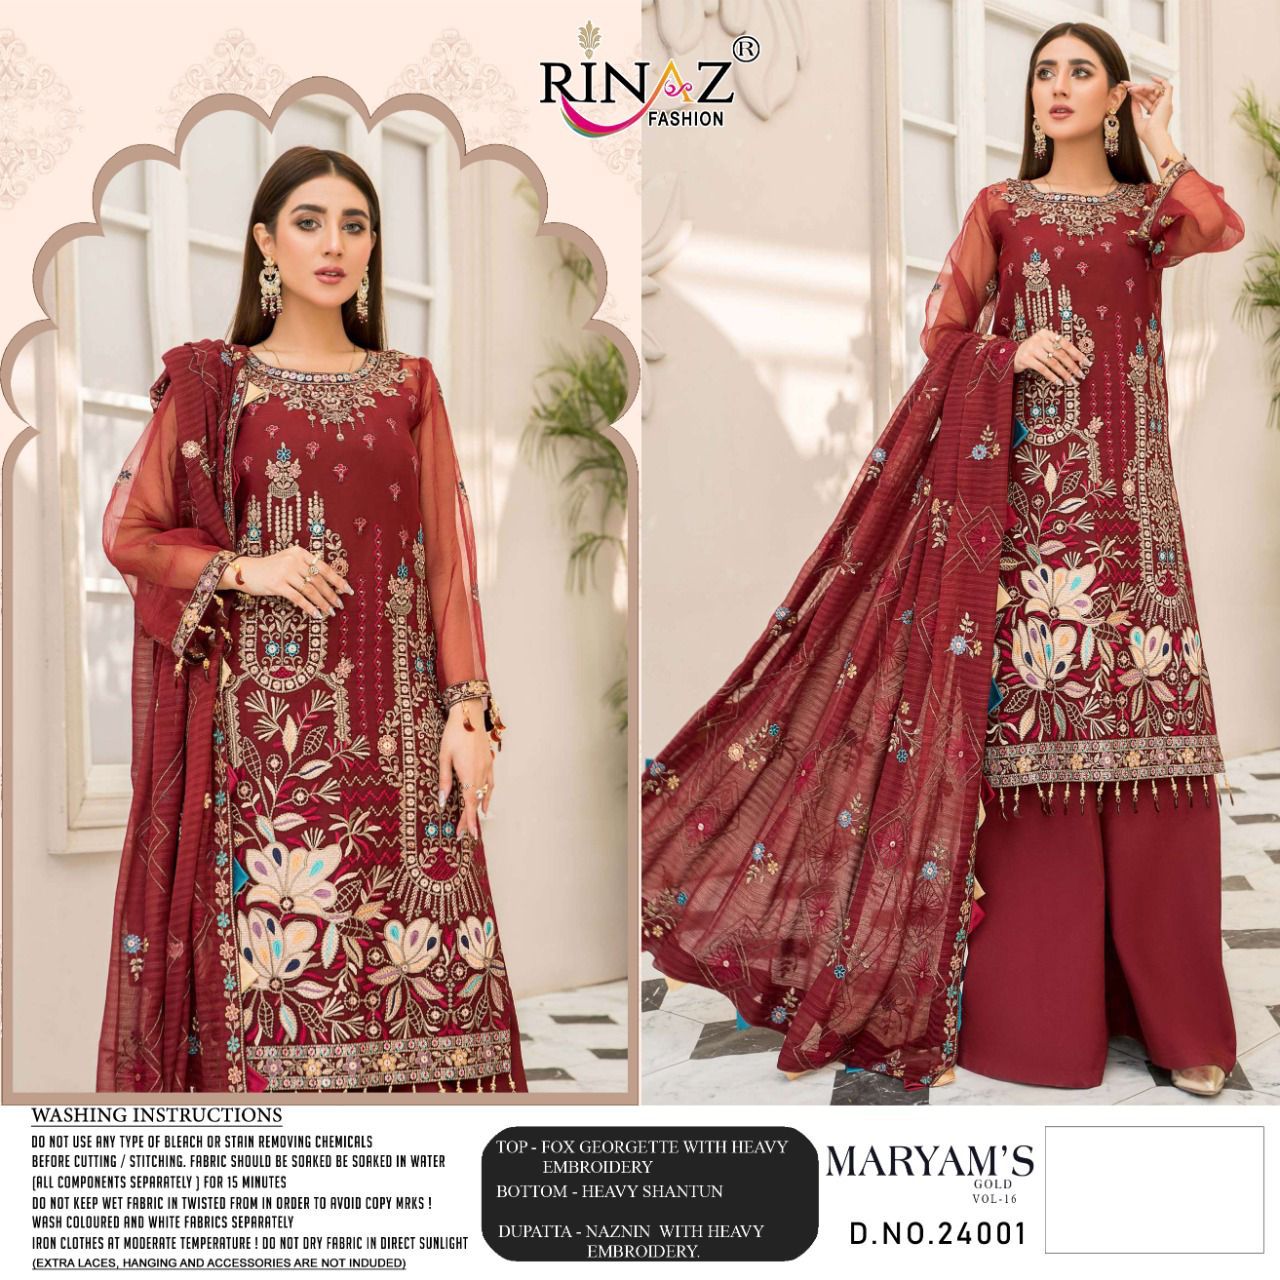 Rinaz Fashion Maryam's Gold 24001